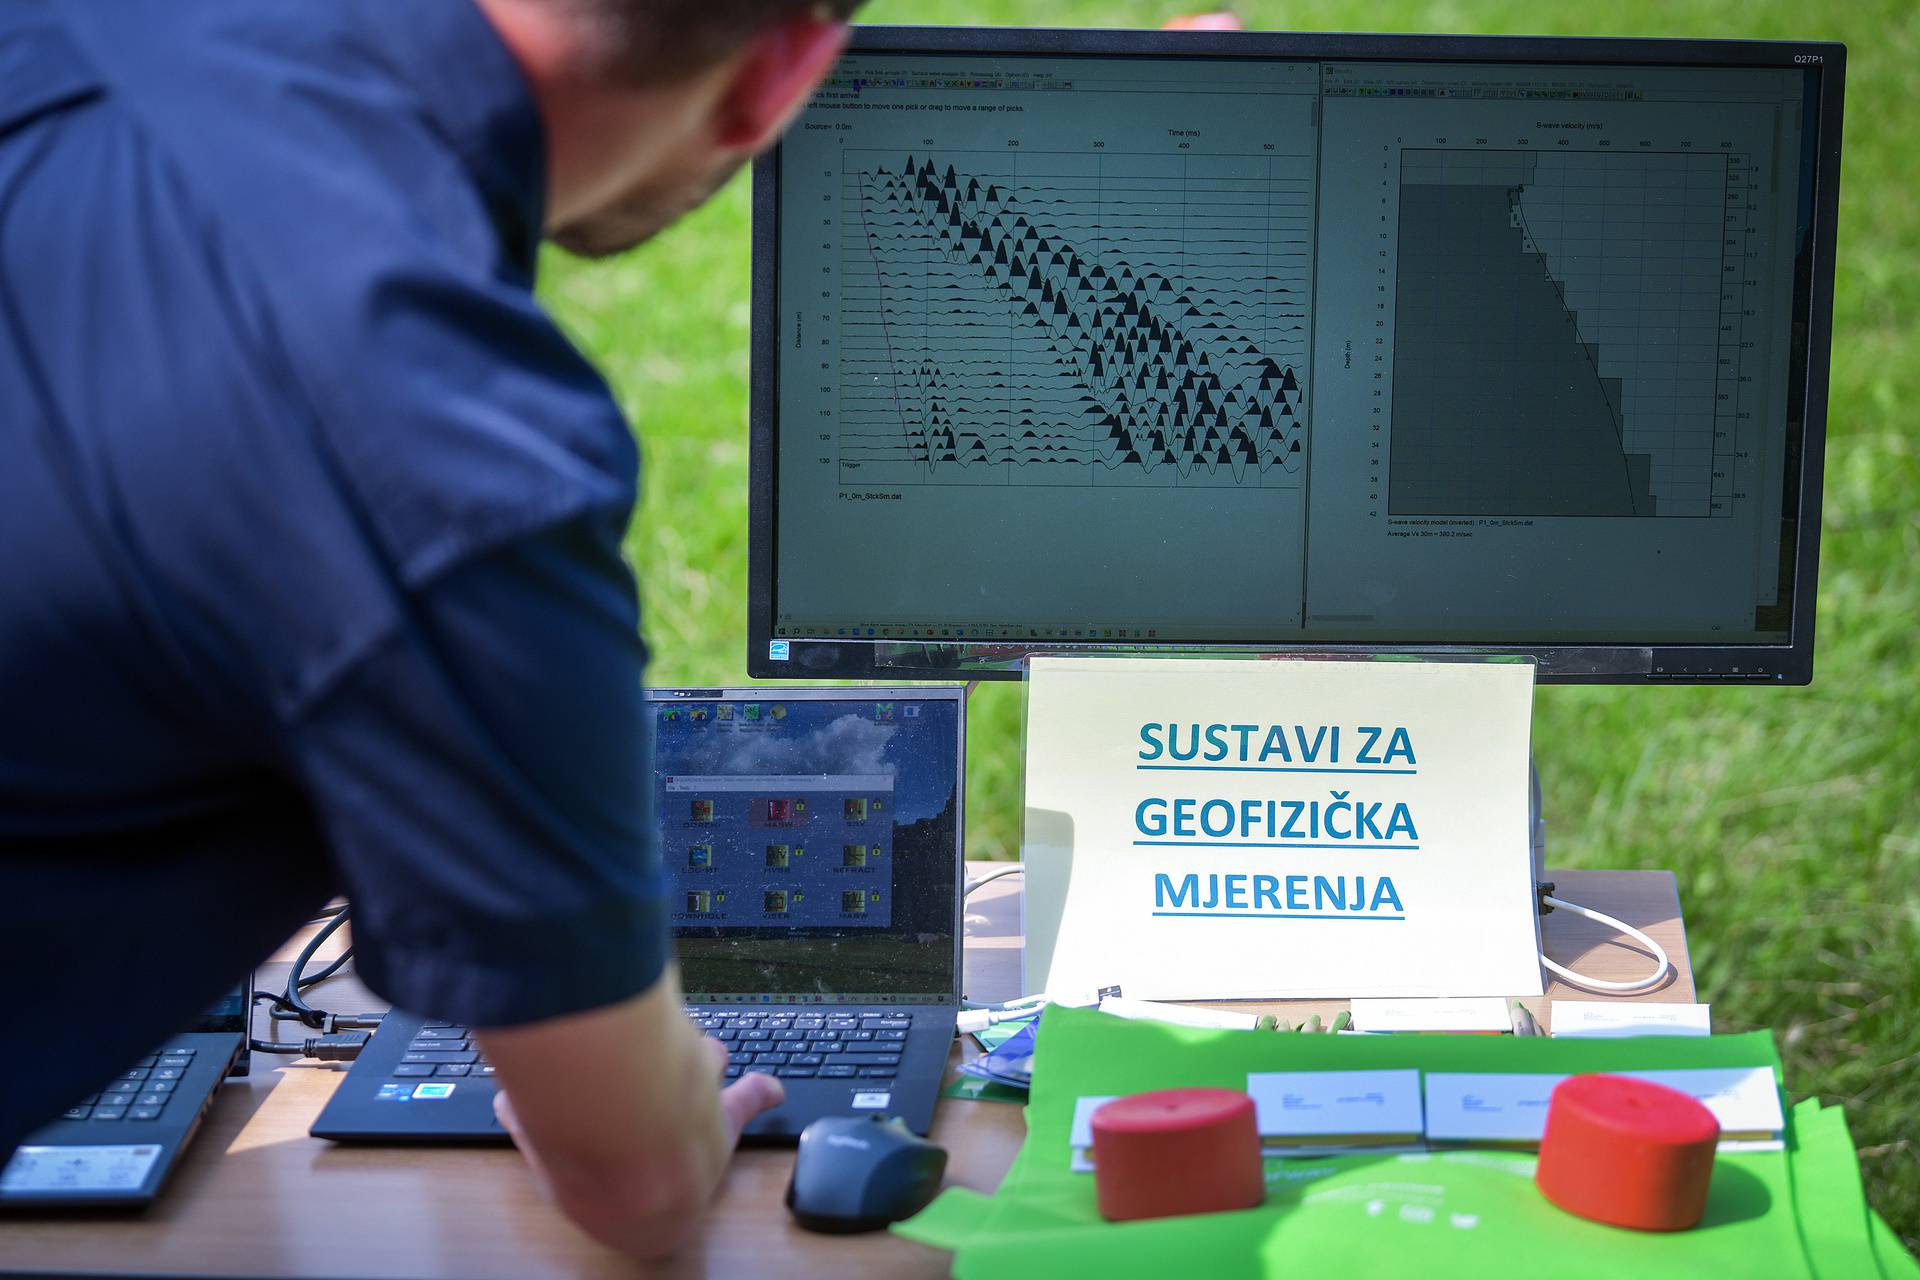 Zagreb: Geofizički odsjek PMF-a predstavio opremu koja će pomoći utvrditi potrese                                